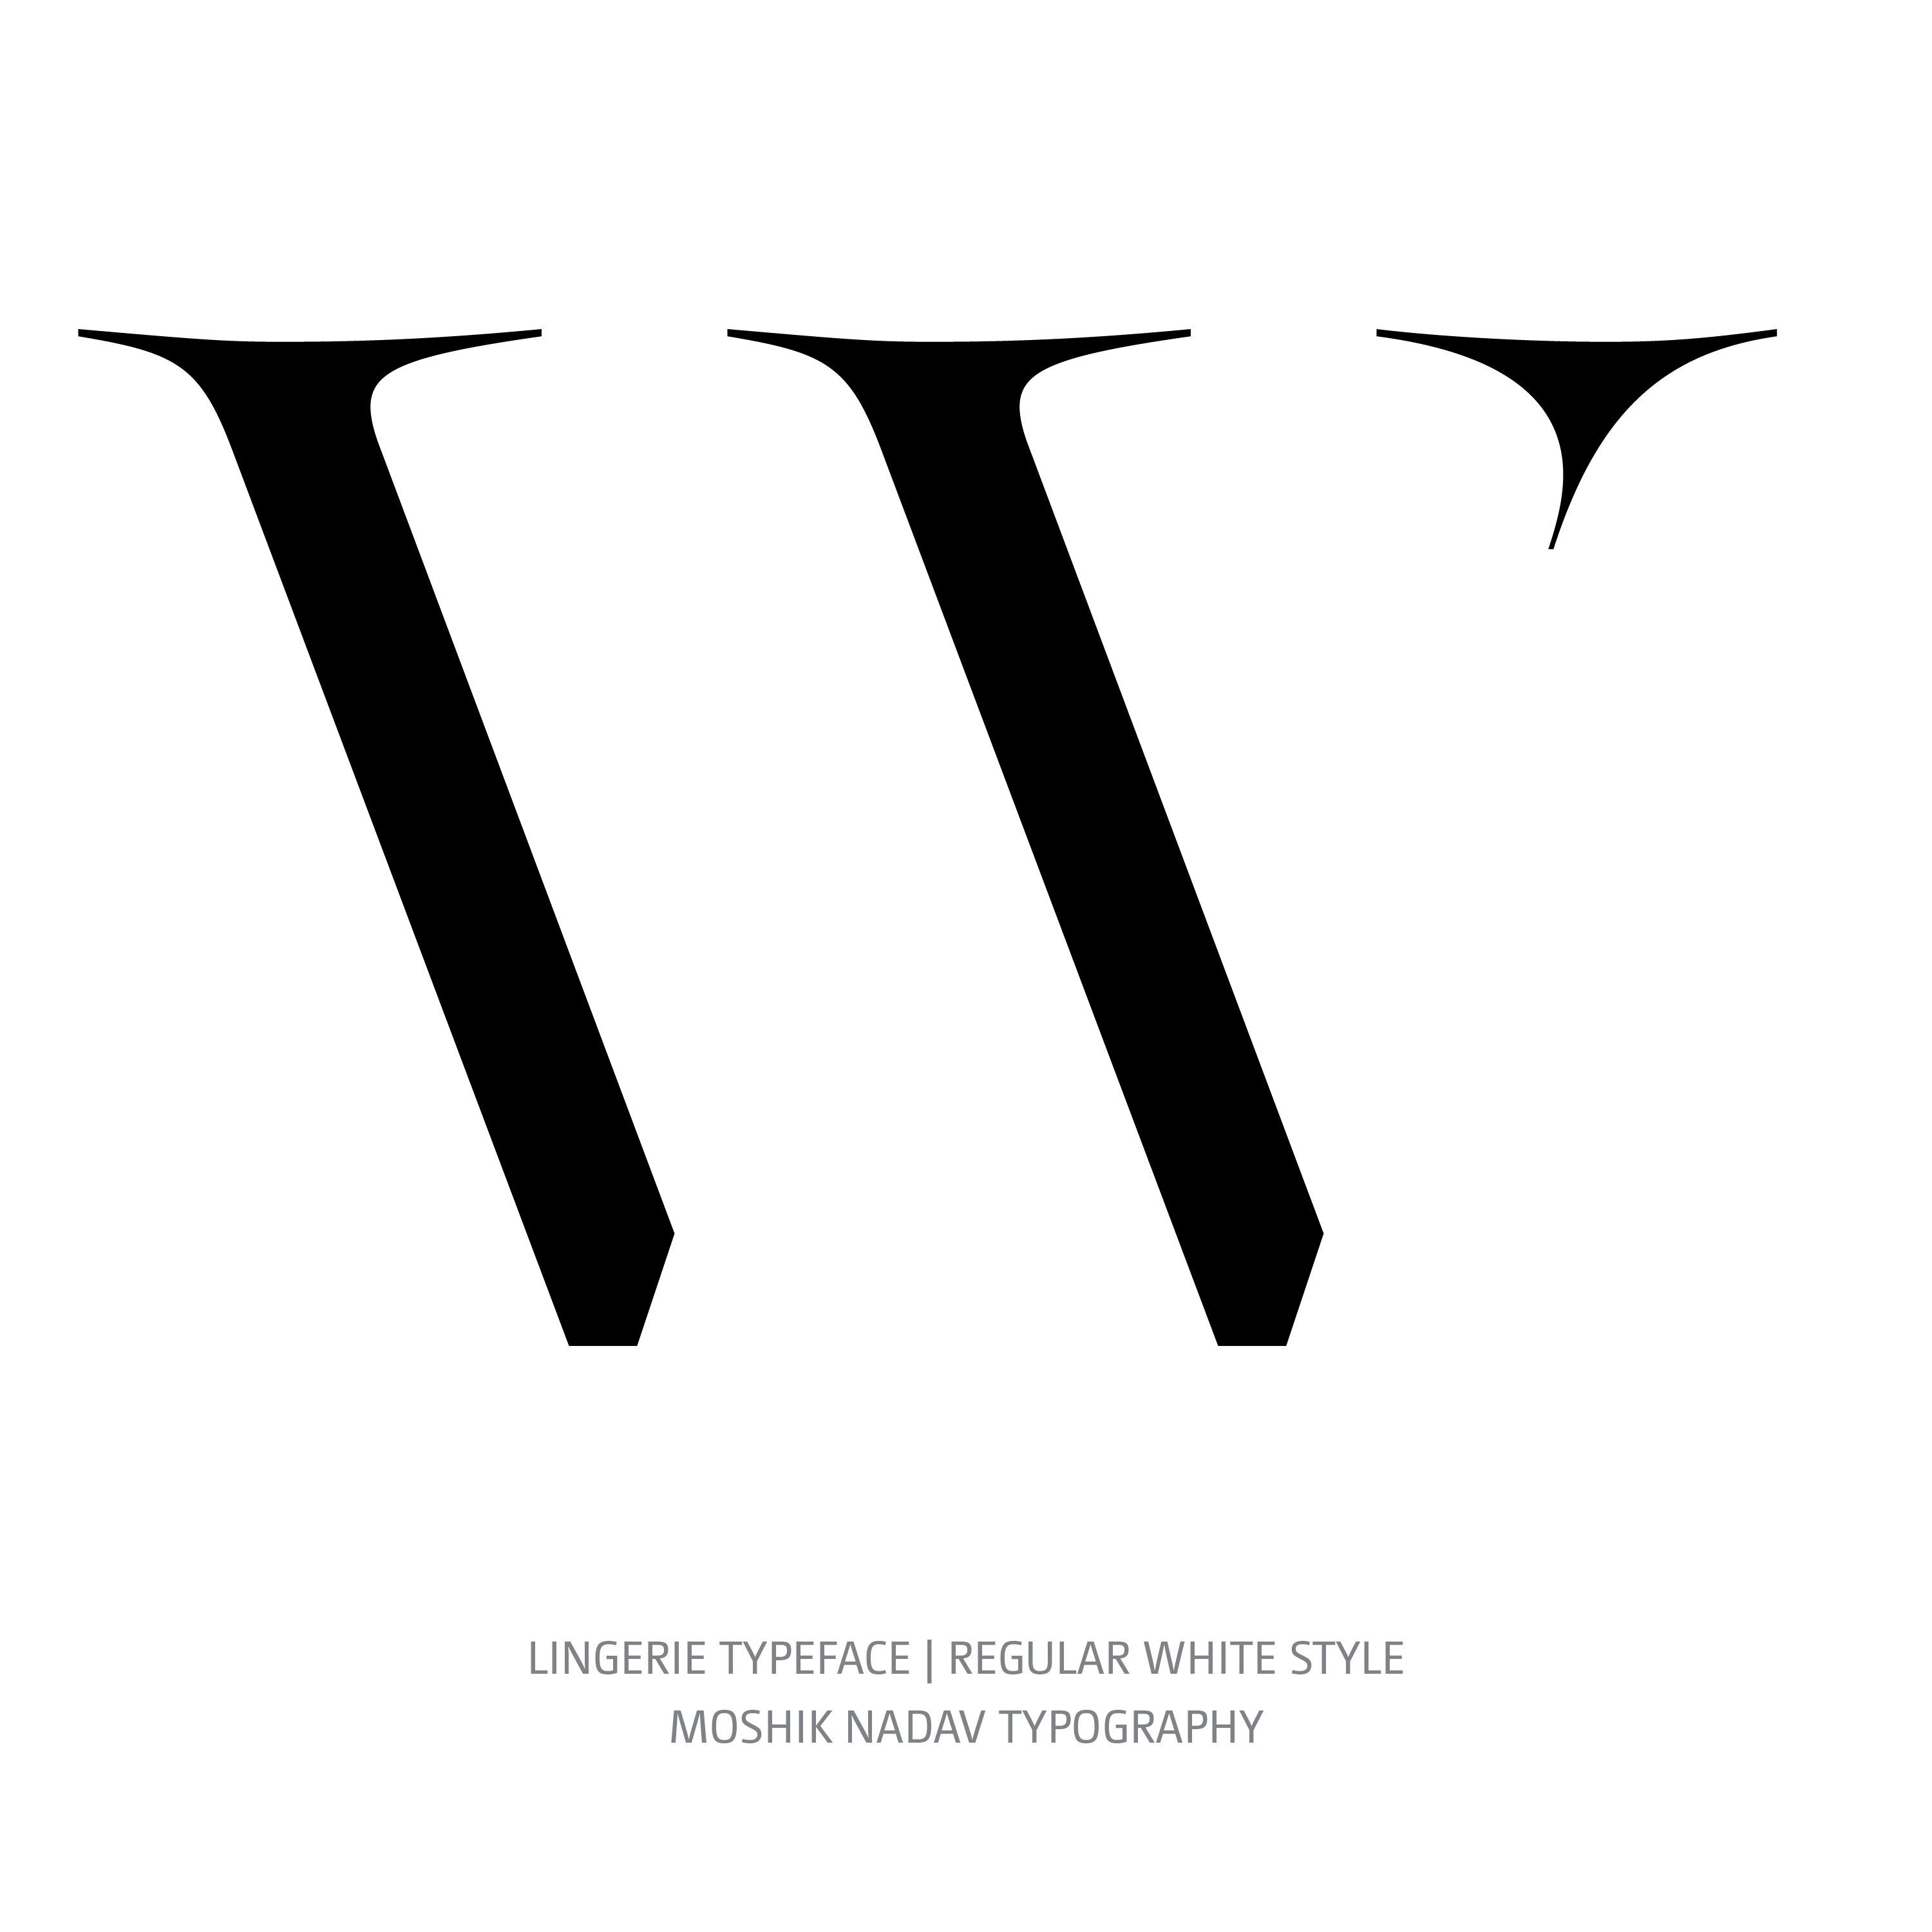 Lingerie Typeface Regular White W